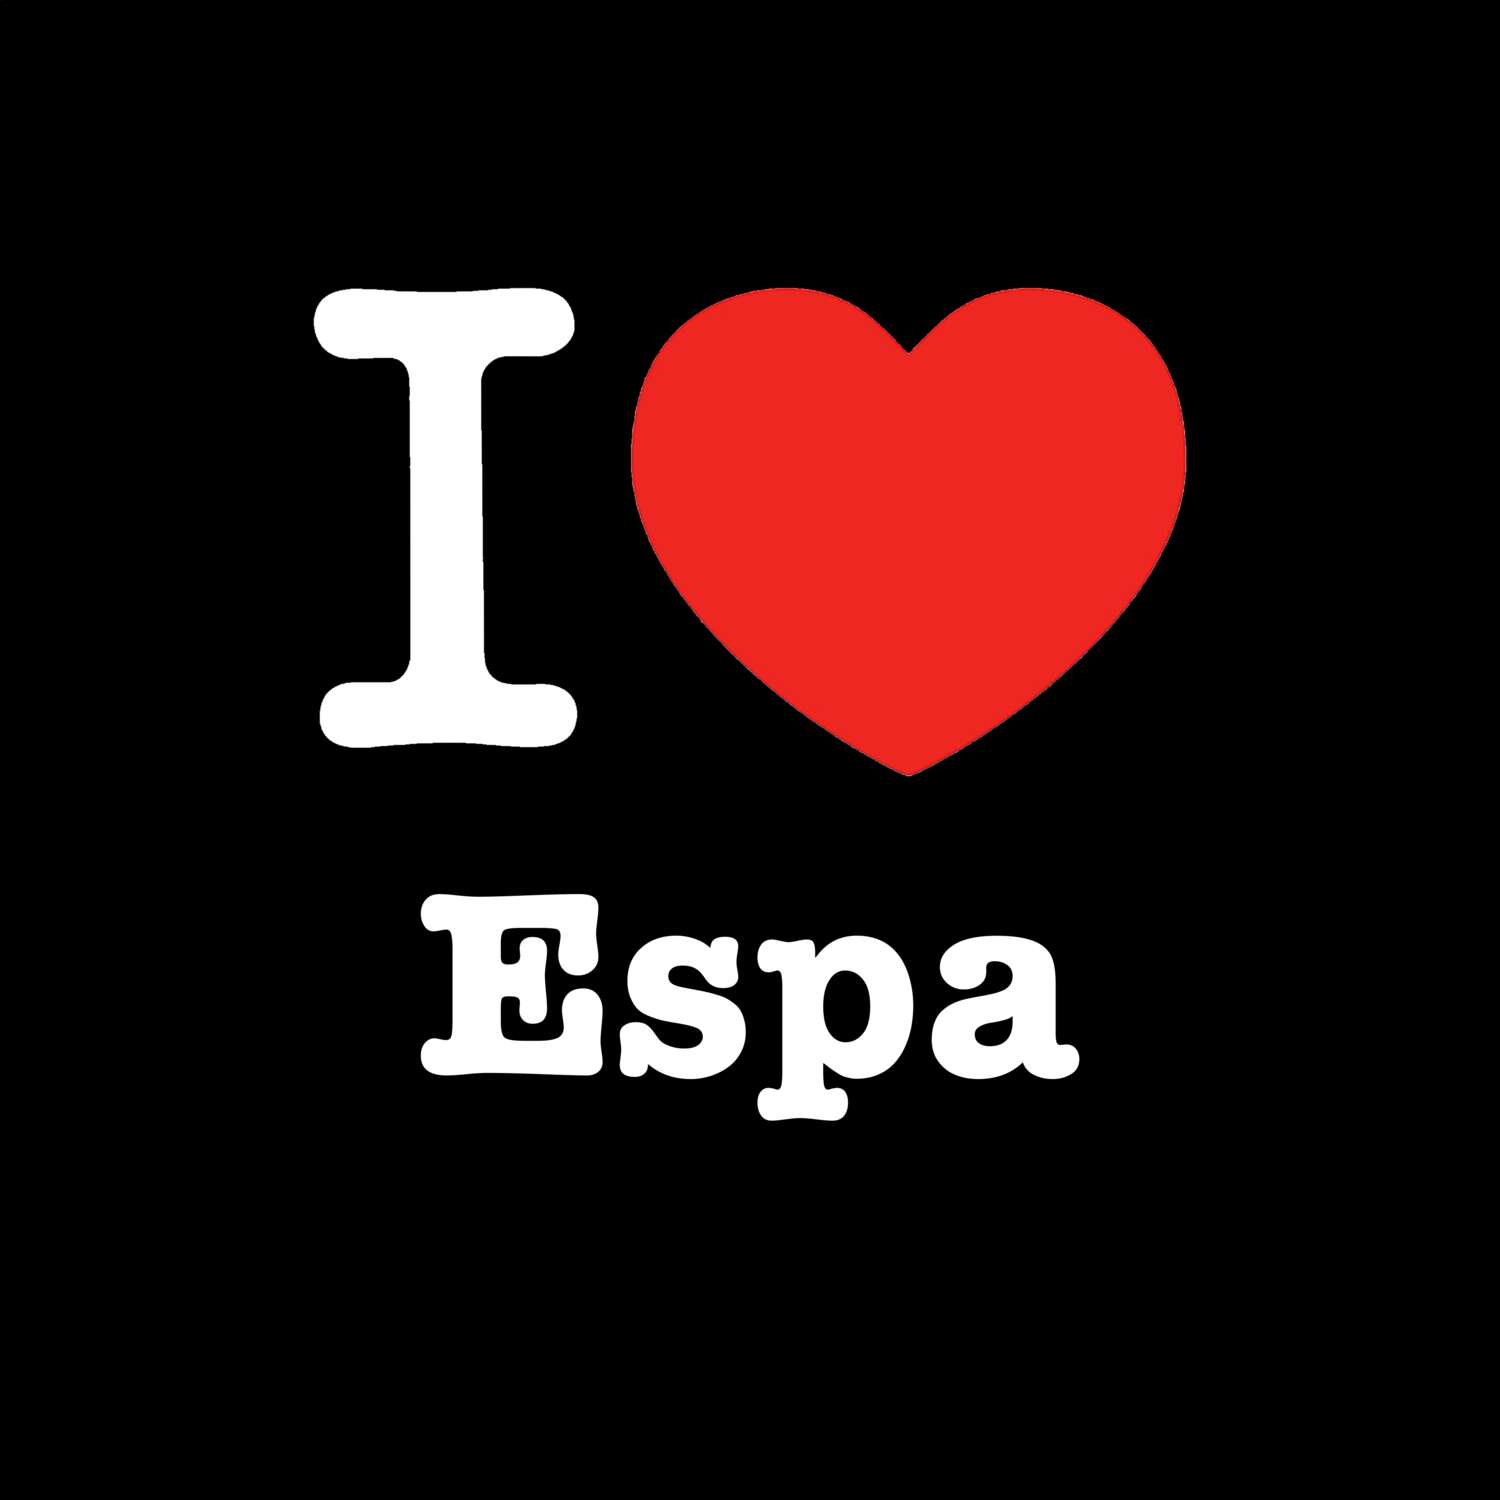 Espa T-Shirt »I love«